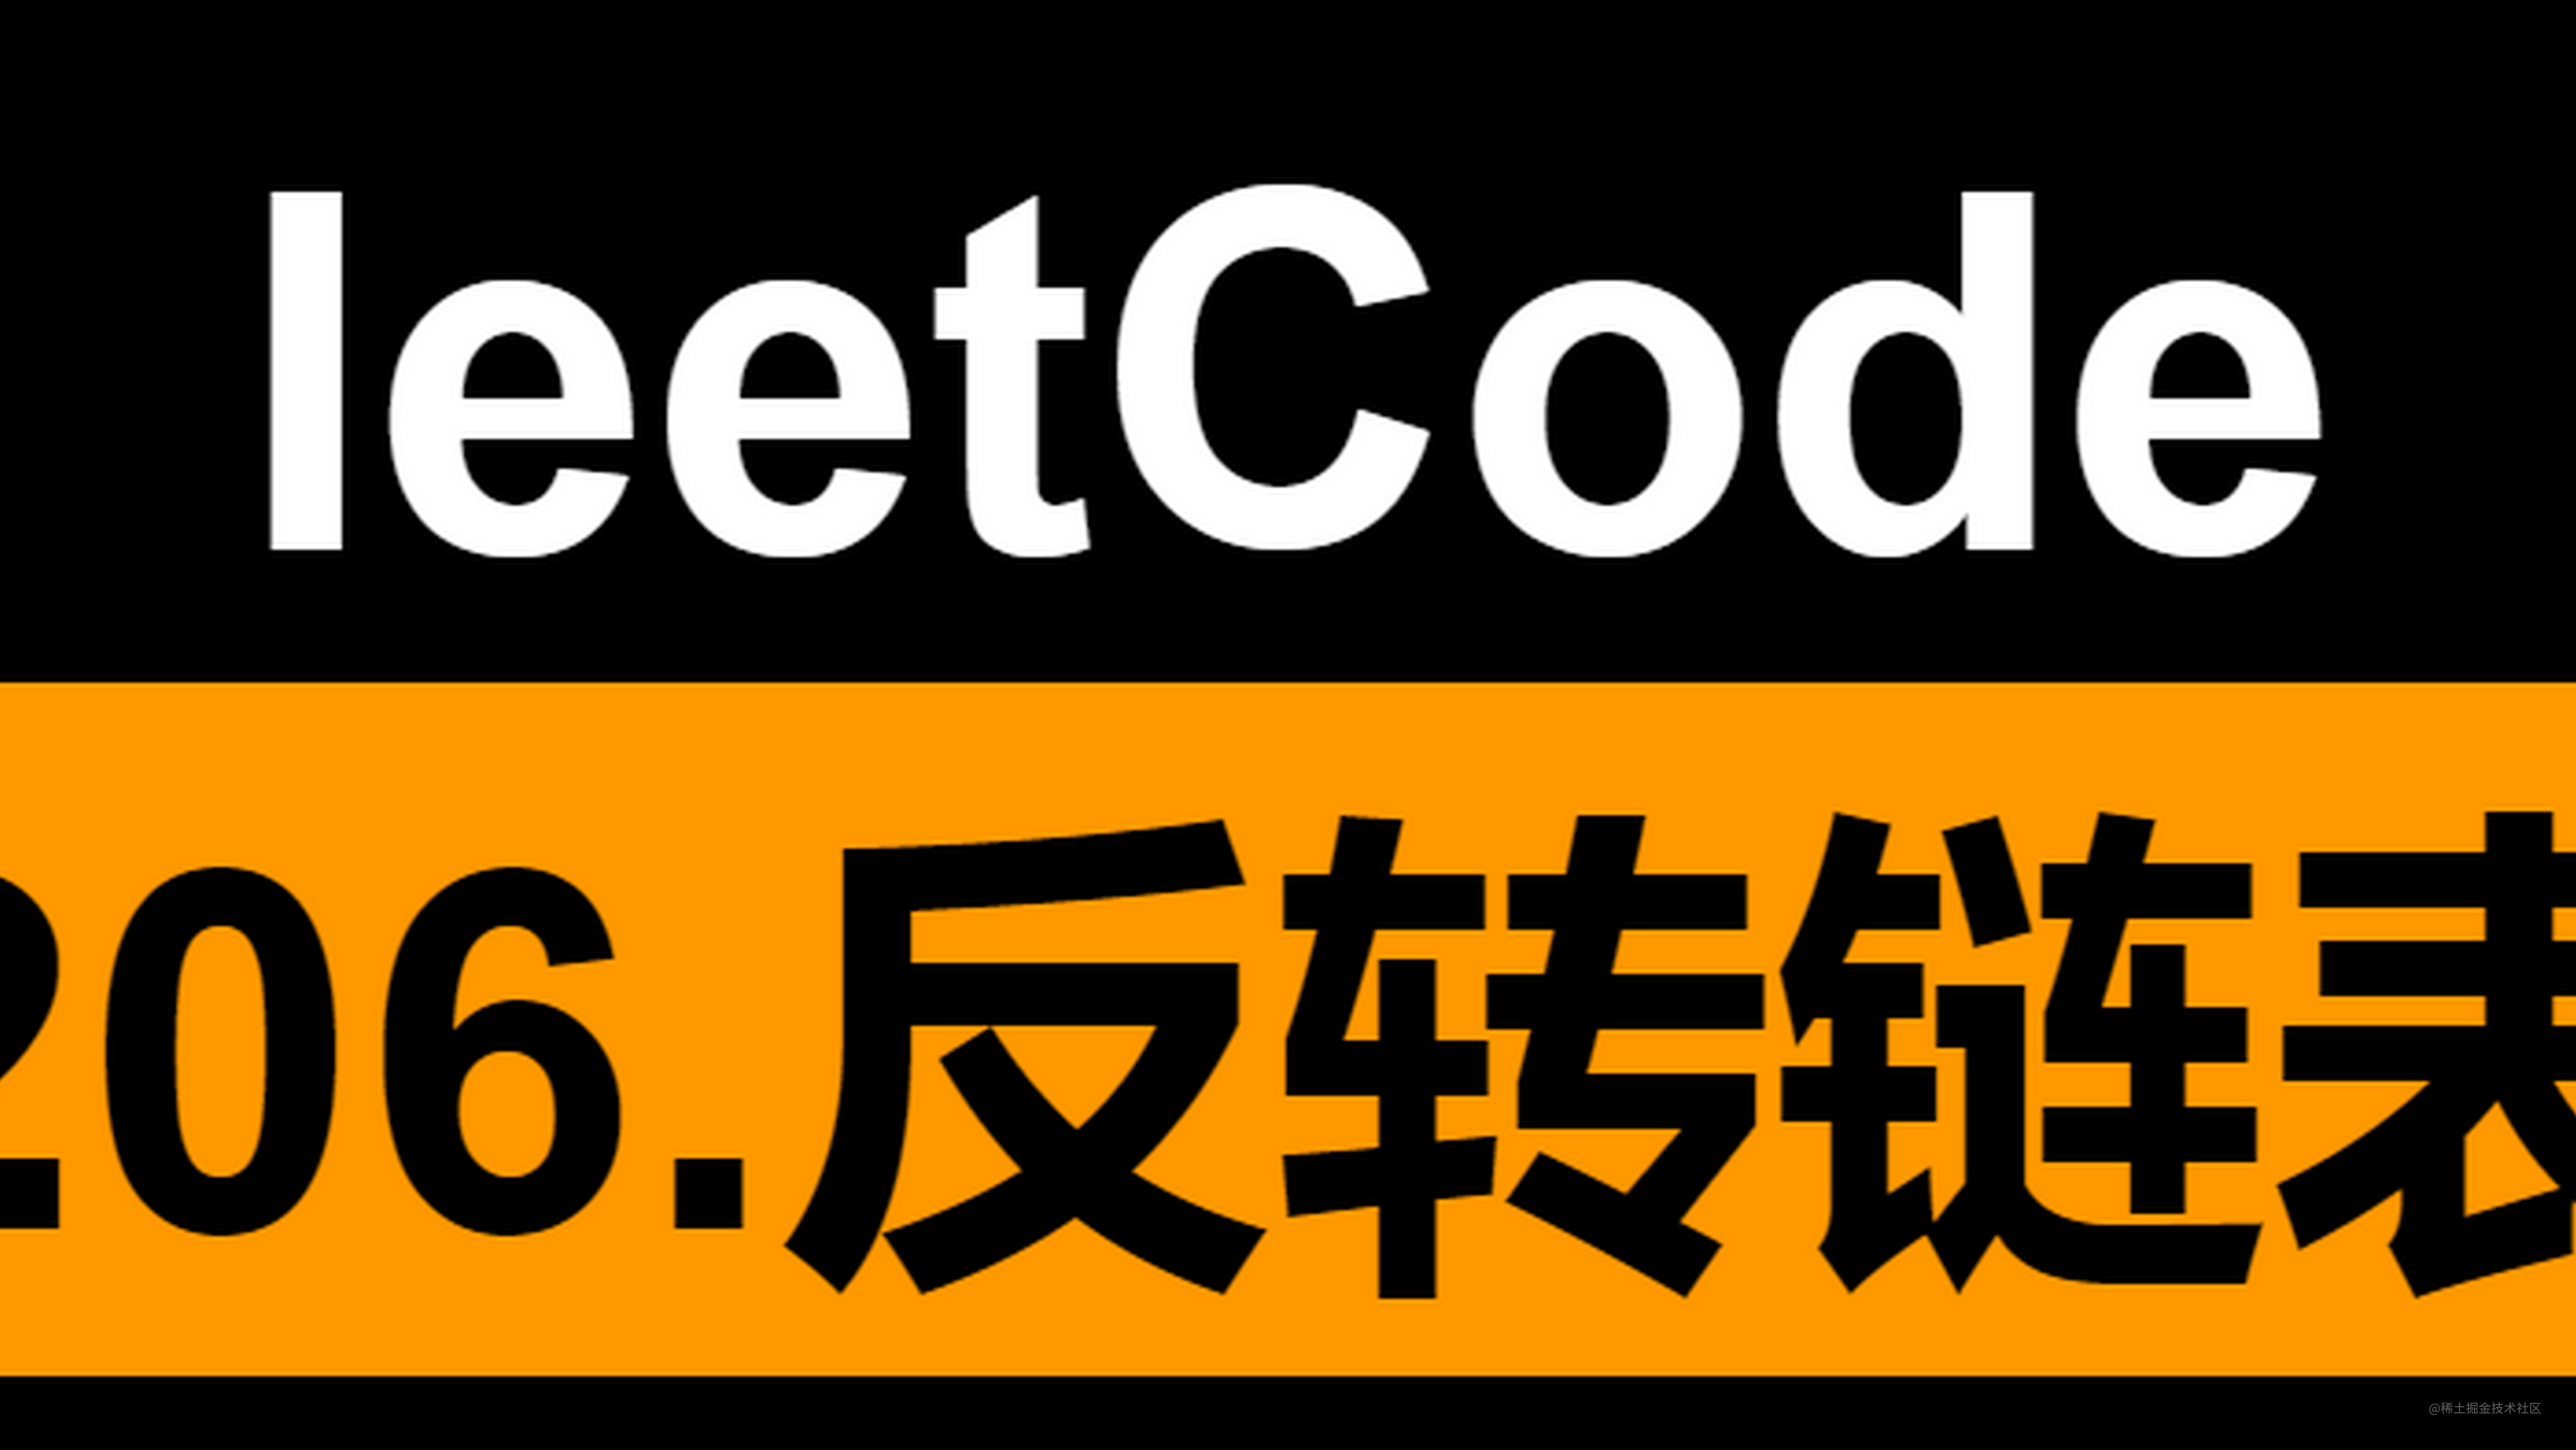 [路飞]_leetcode 206. 反转链表 JavaScript版